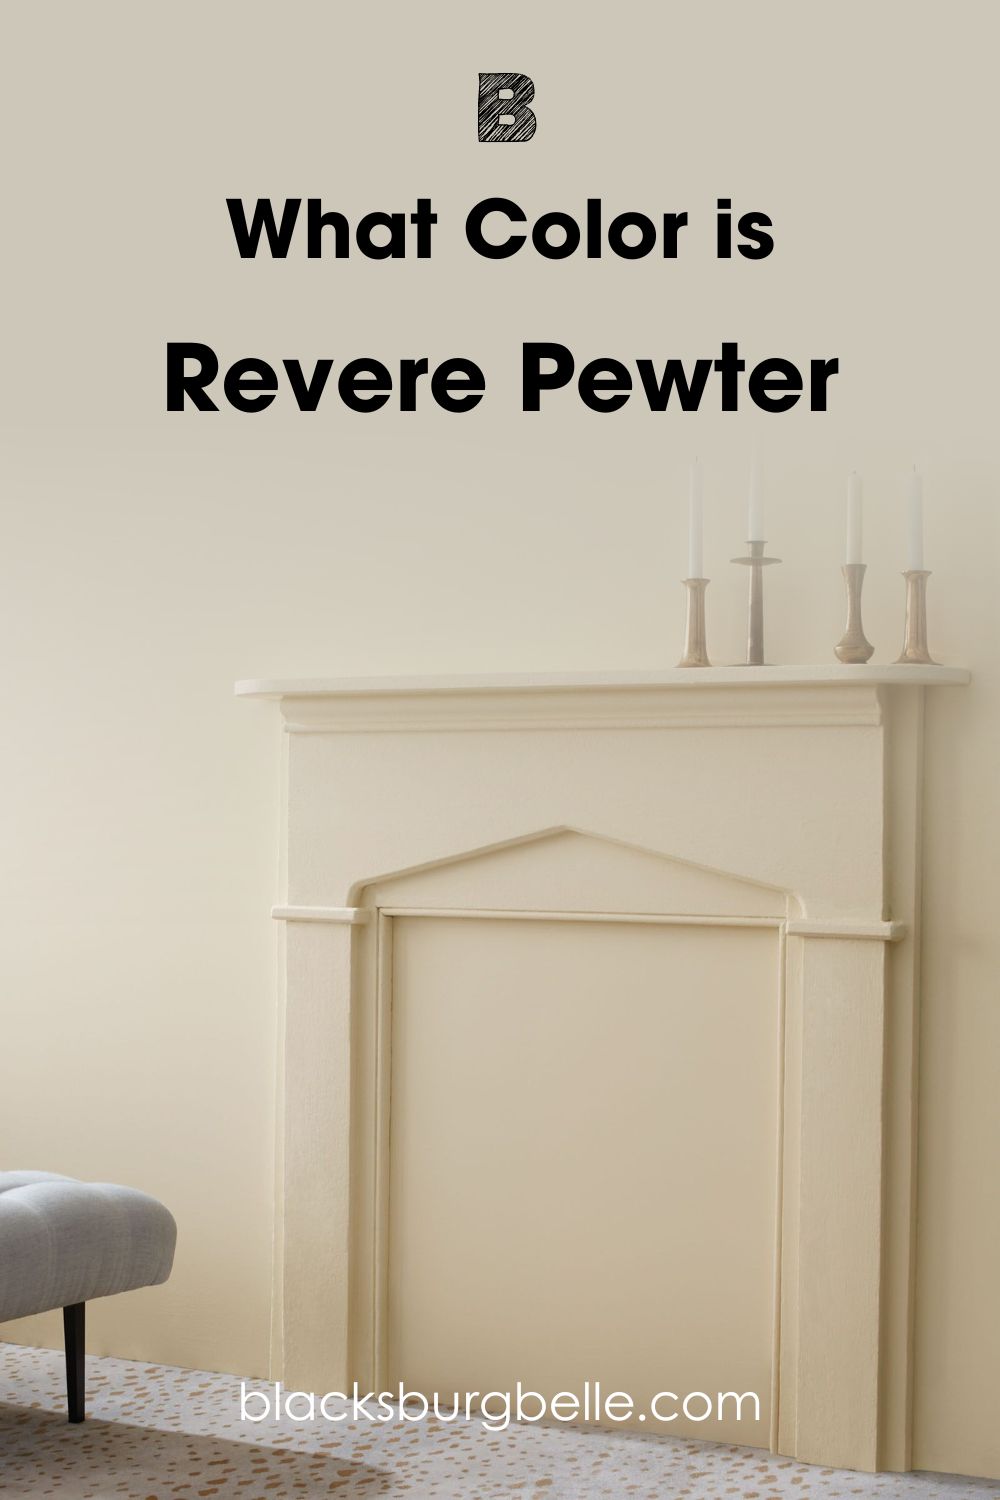 Revere Pewter